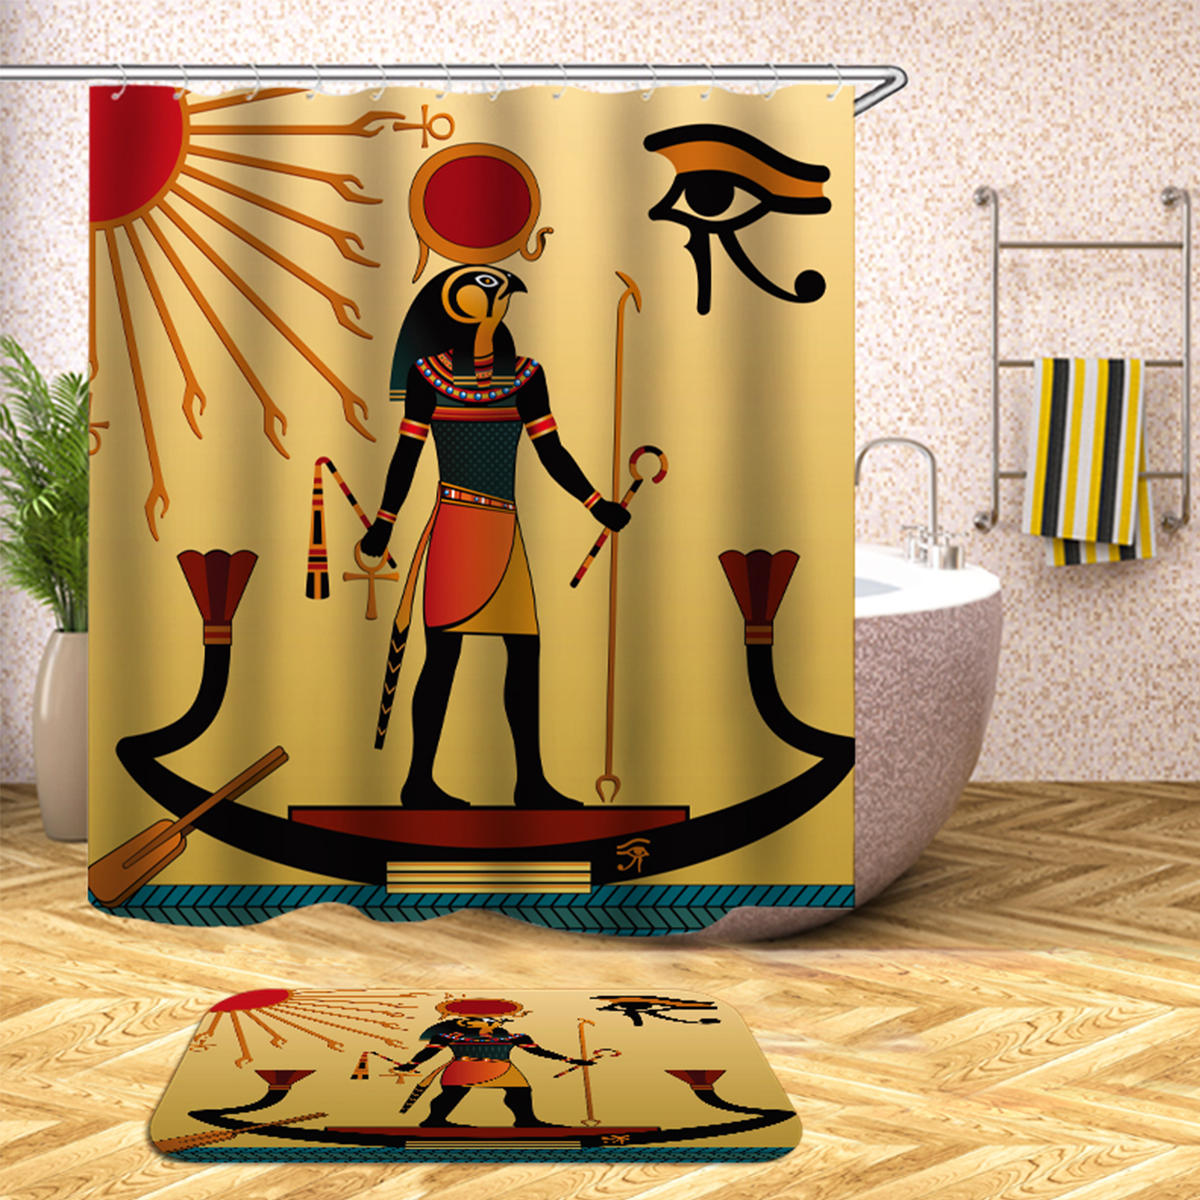 

Водонепроницаемы Египетские занавески для душа с крючками на 12 шт. Ванная комната Комплект коврика для туалетной бумаги